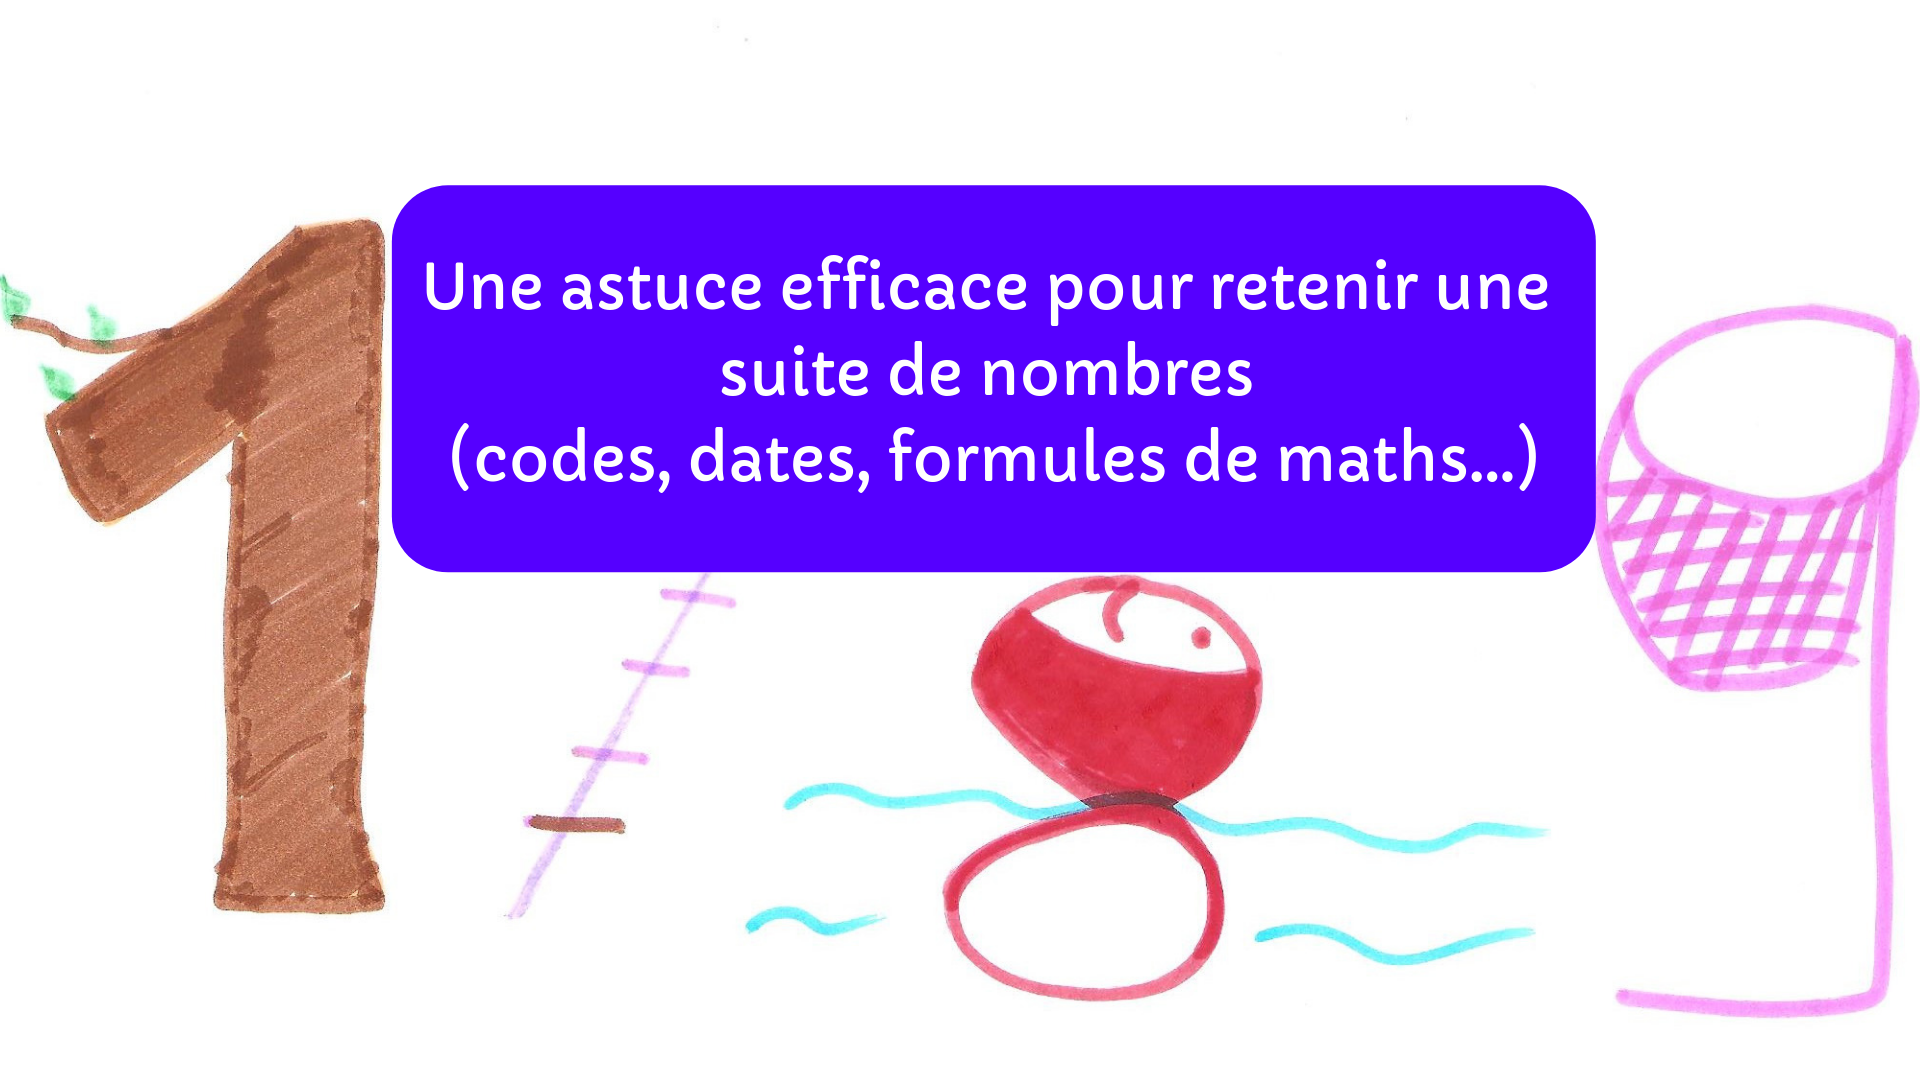 Une astuce efficace pour retenir une suite de nombres (codes, dates, formules de maths...)